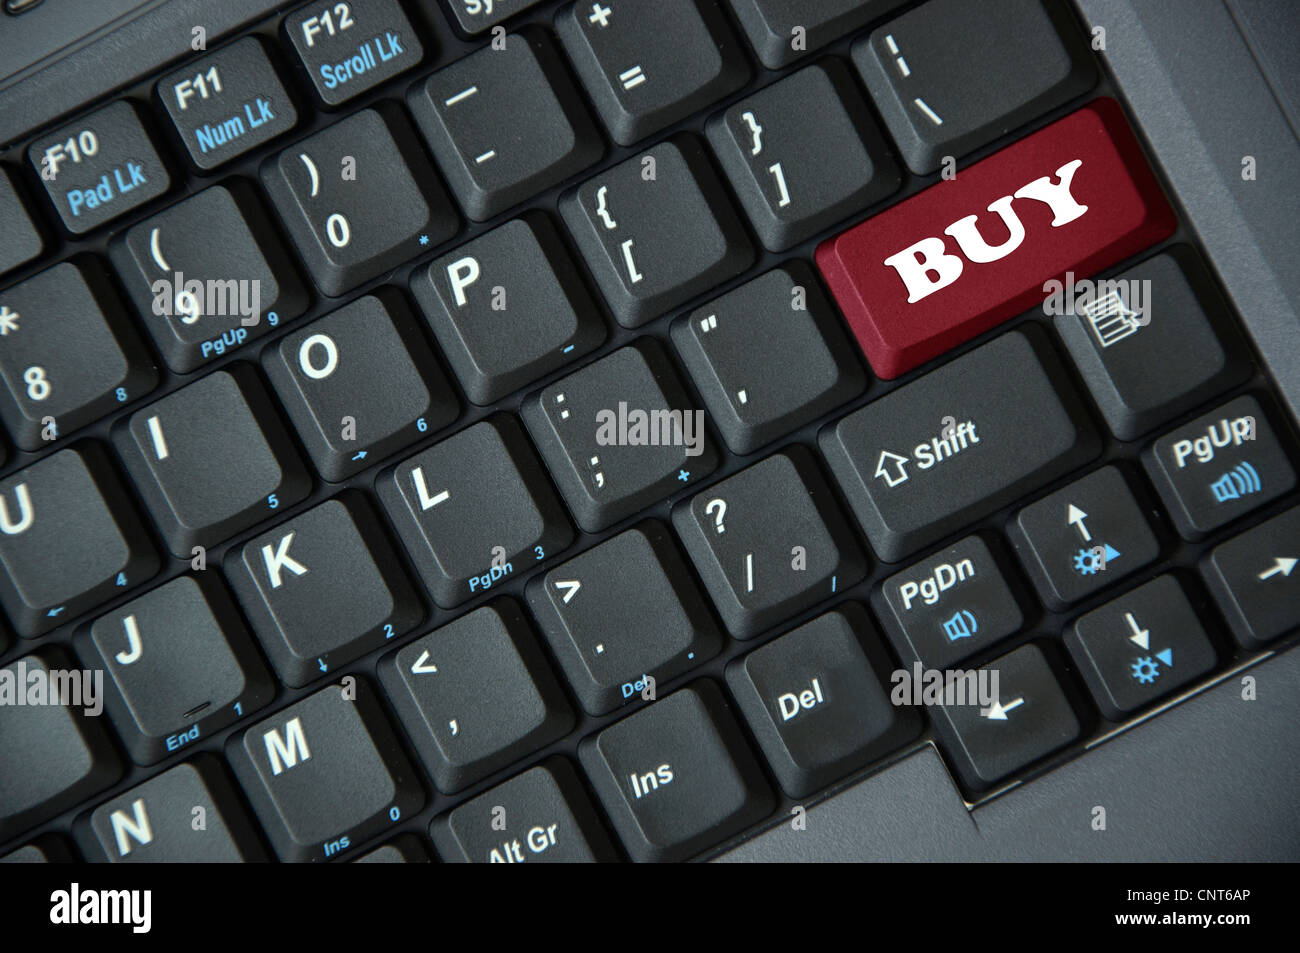 Buy on keyboard Stock Photo